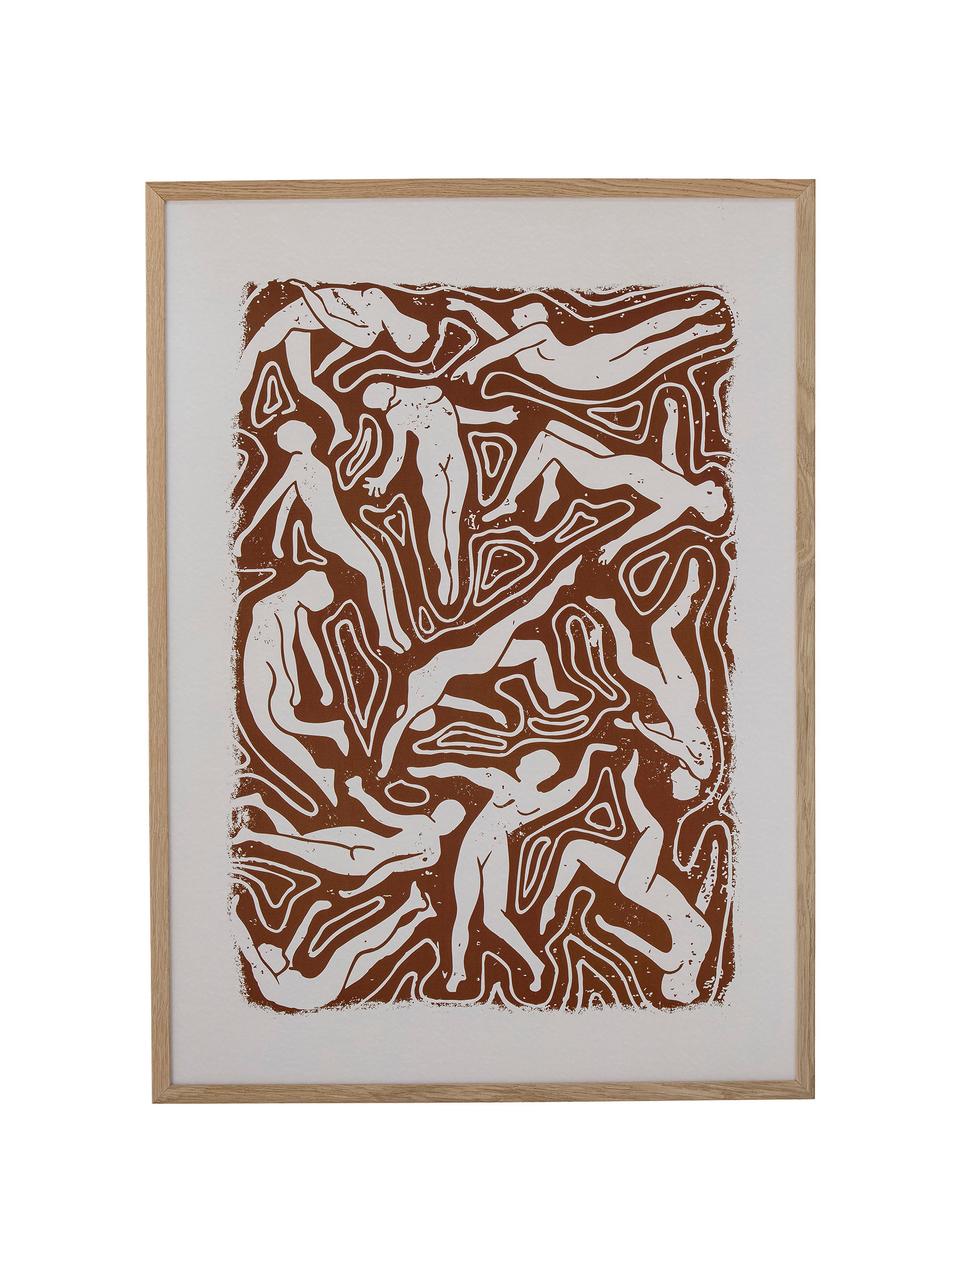 Ingelijste kunstdruk Ciron, Frame: eikenhoutkleurig, Bruin, beige, wit, lichtbruin, B 52 x H 72 cm